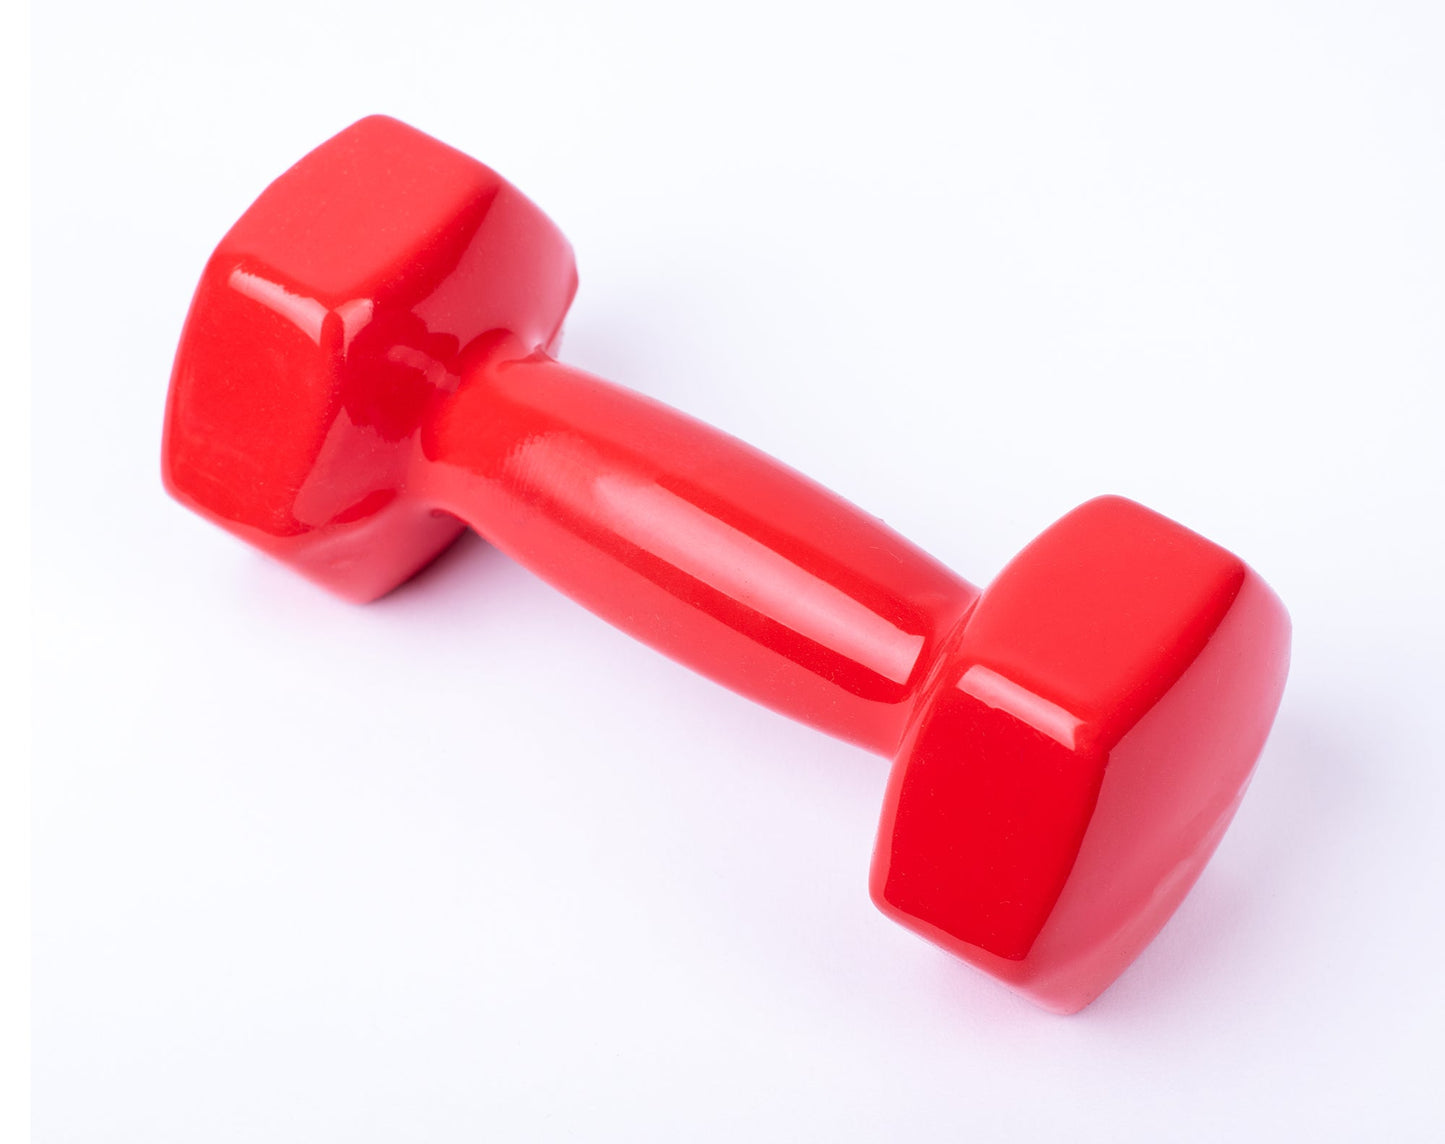 دامبل حديد للتمارين الرياضية بطبقة من الفينيل - لون احمر - قطعة واحدة - وزن 2 كيلو - Kanteen - كانتين